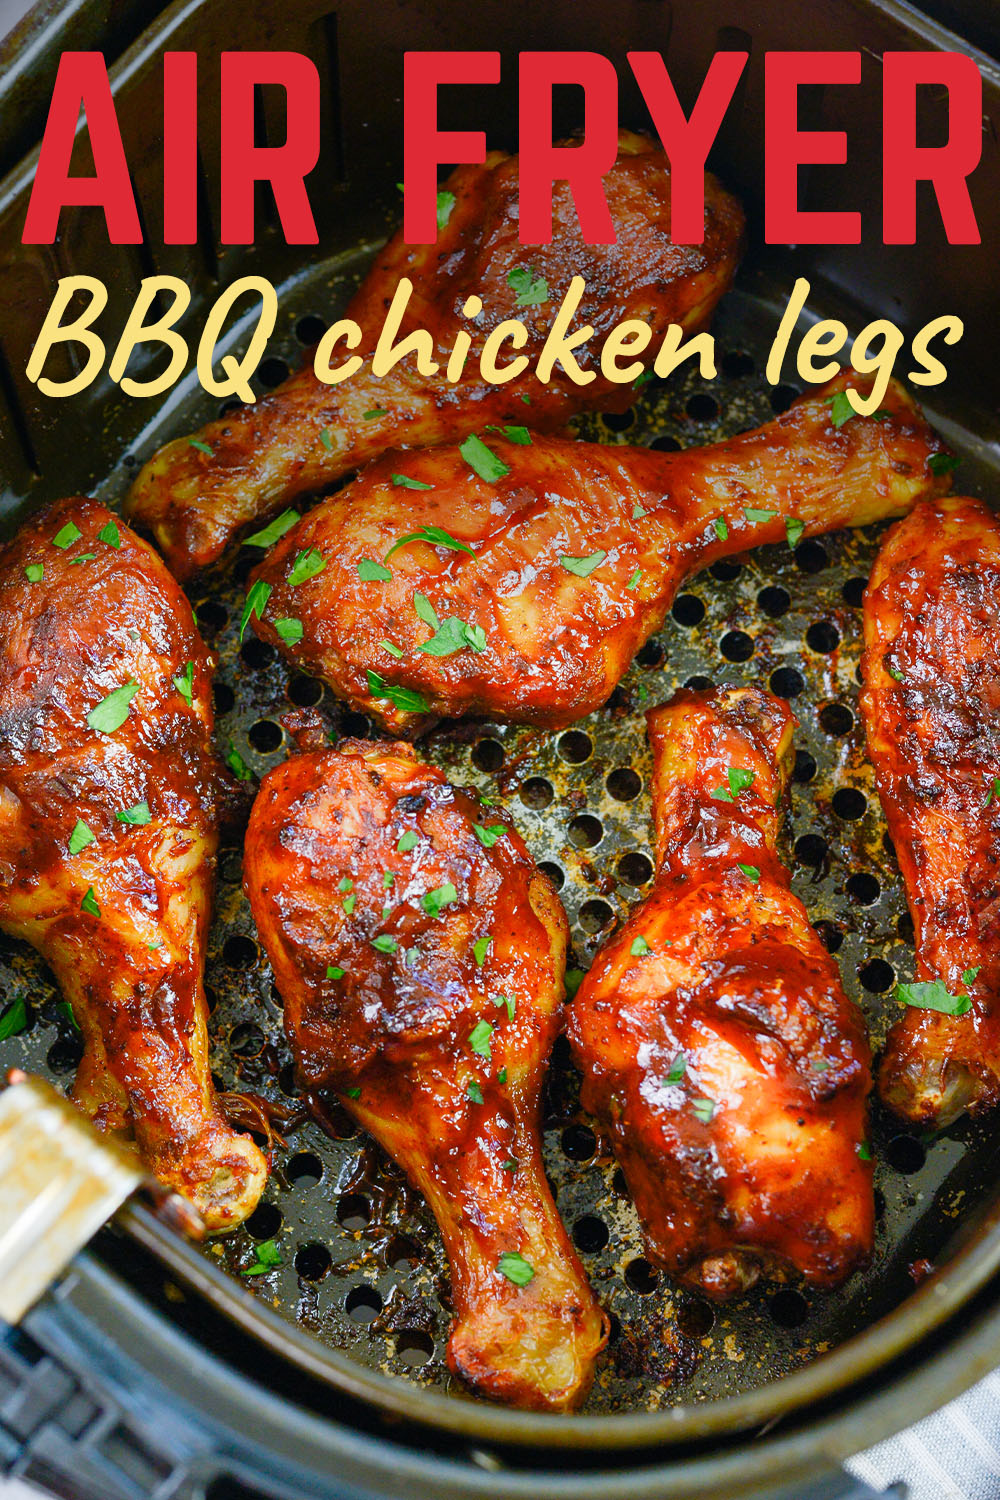 Several BBQ chicken legs in an air fryer basket.